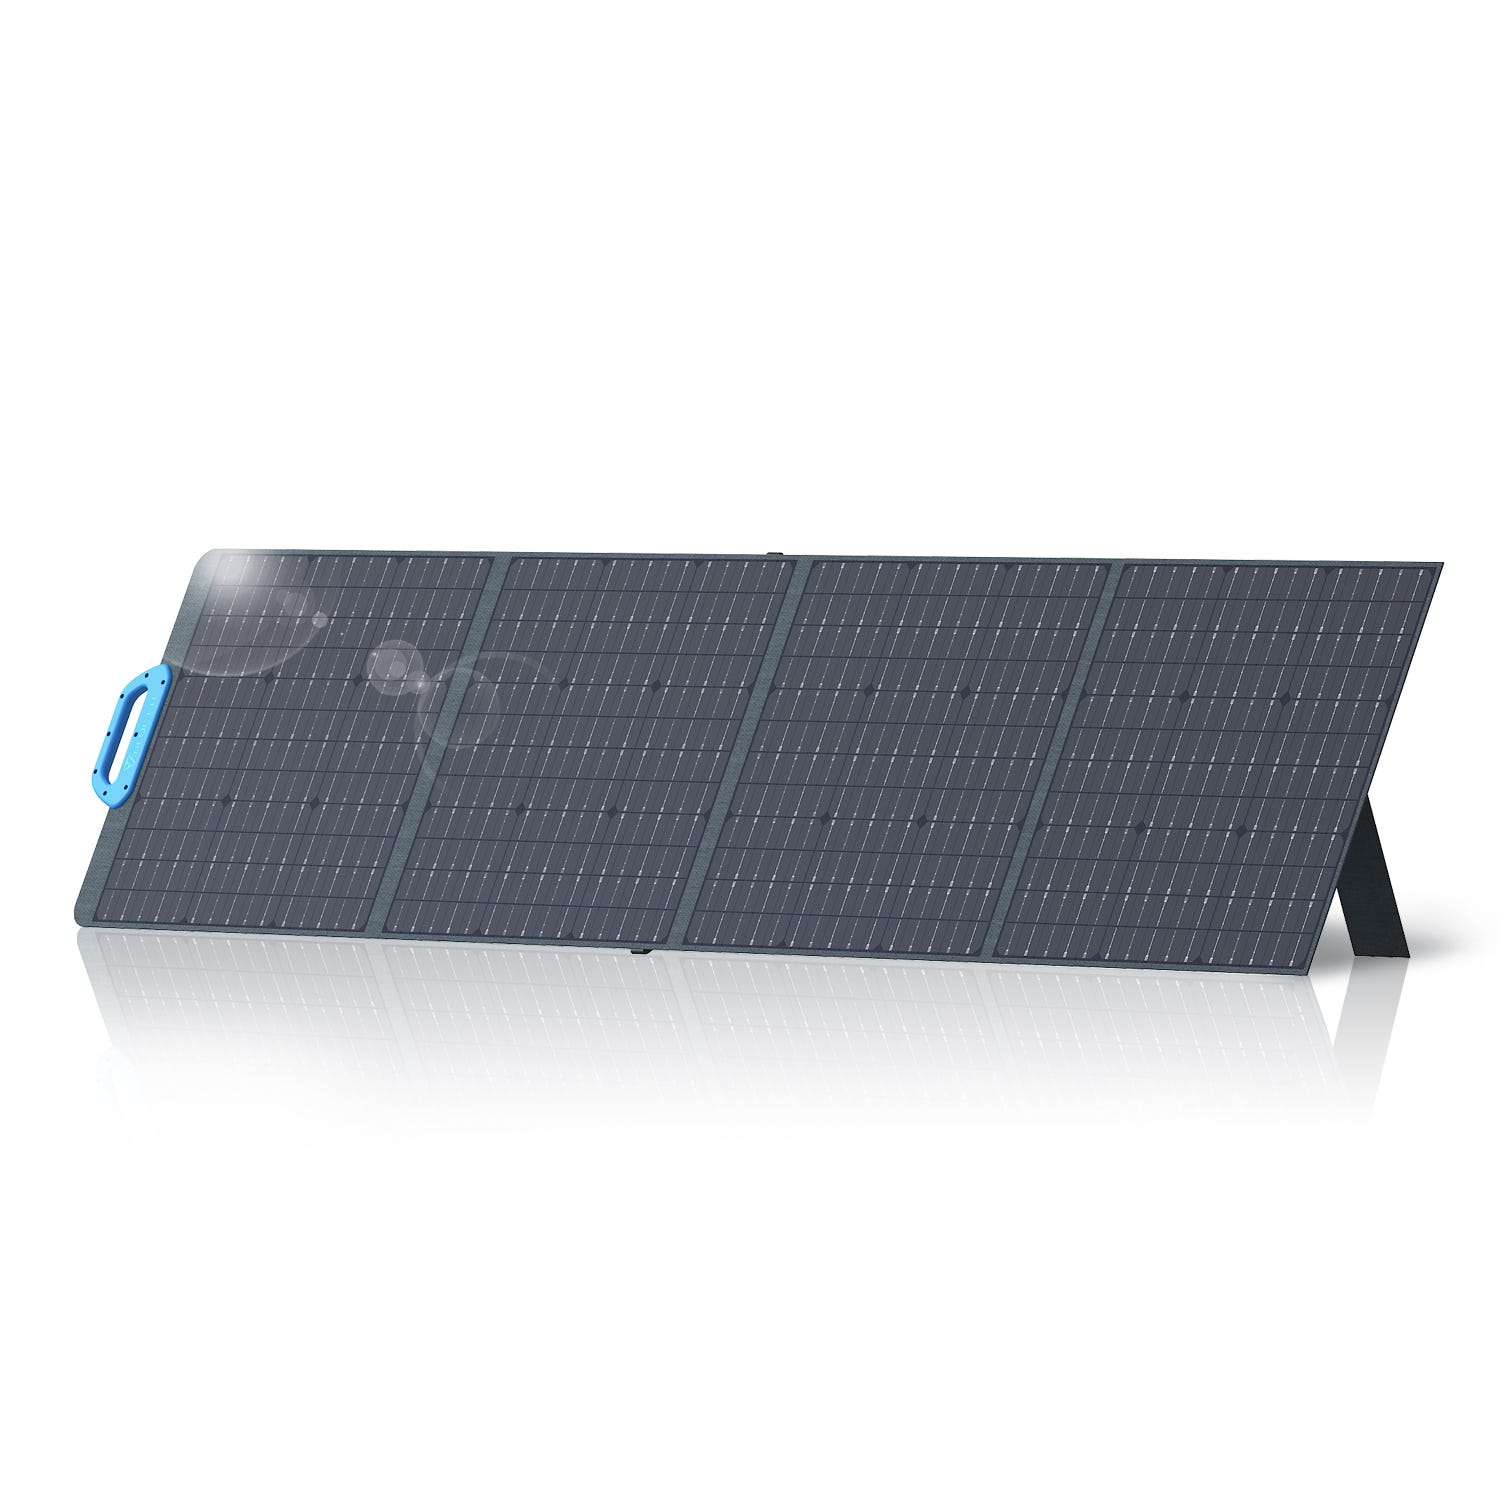 Panel Solar Bluetti Pv120 120w Monocristalino Fotovoltaico